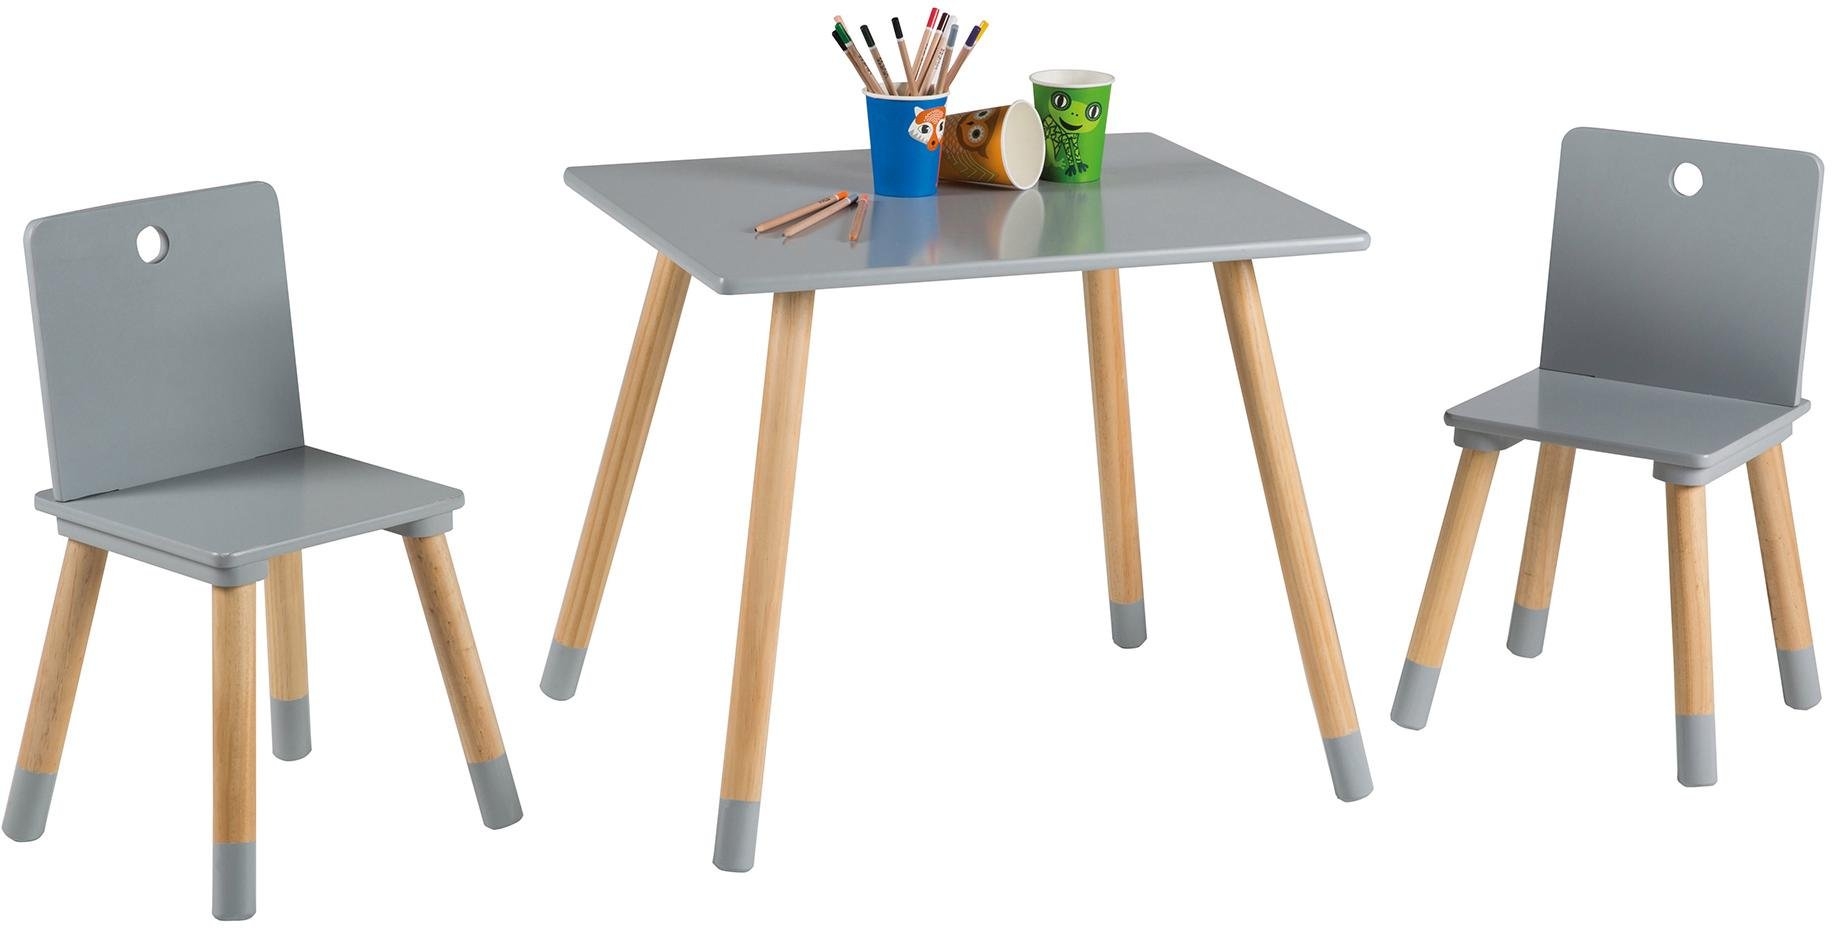 Fonkelnieuw Roba tafel en stoelen voor kinderen, »Kinderzithoek, grijs« online SJ-98